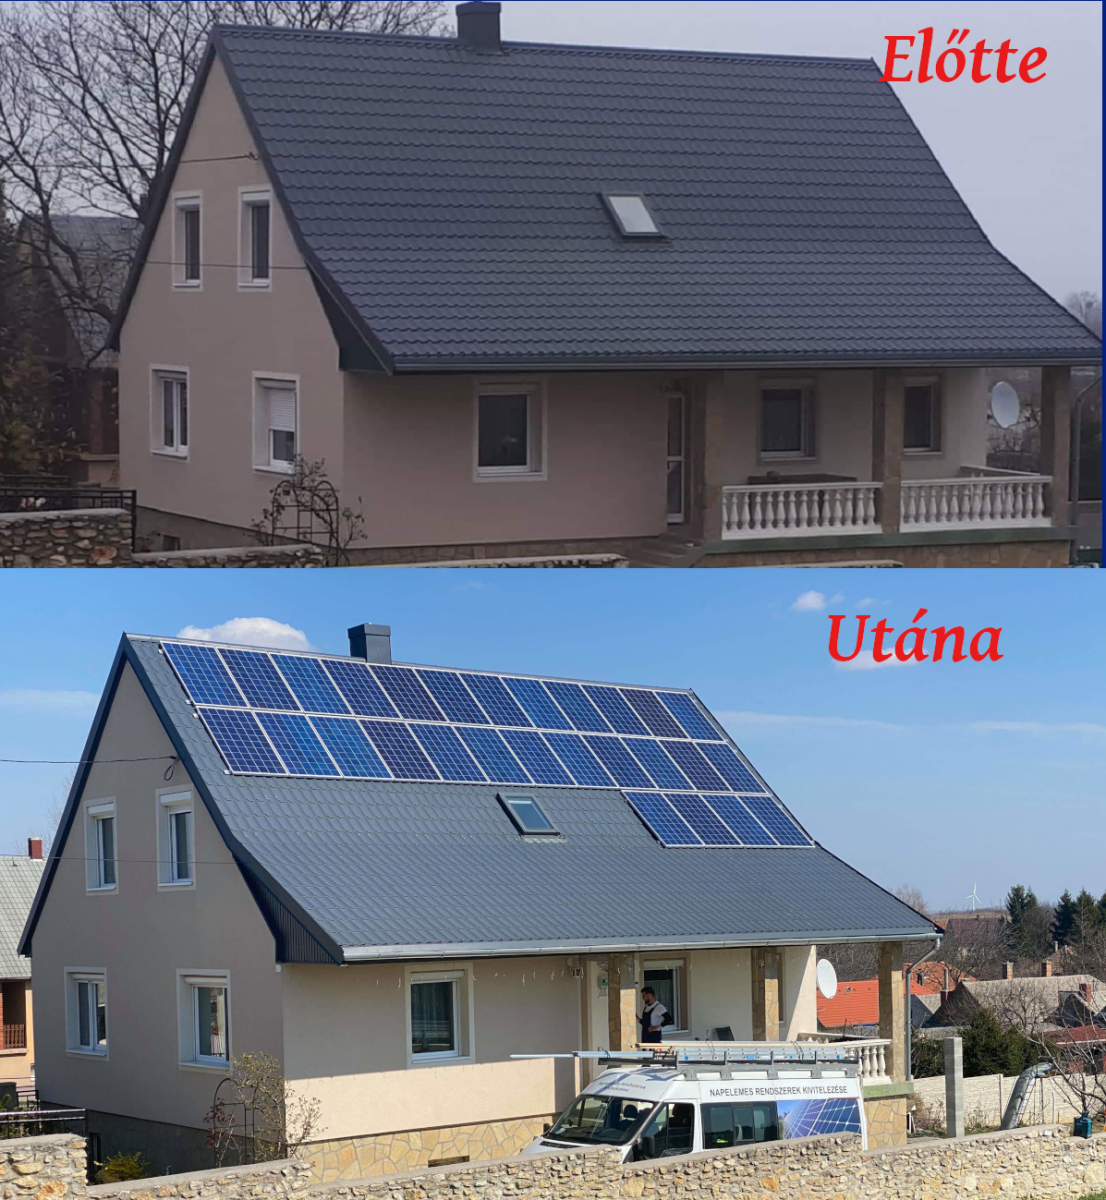 Német Bauer panelek, Solaredge inverter, panelenkénti teljesítményoptimalizálással.